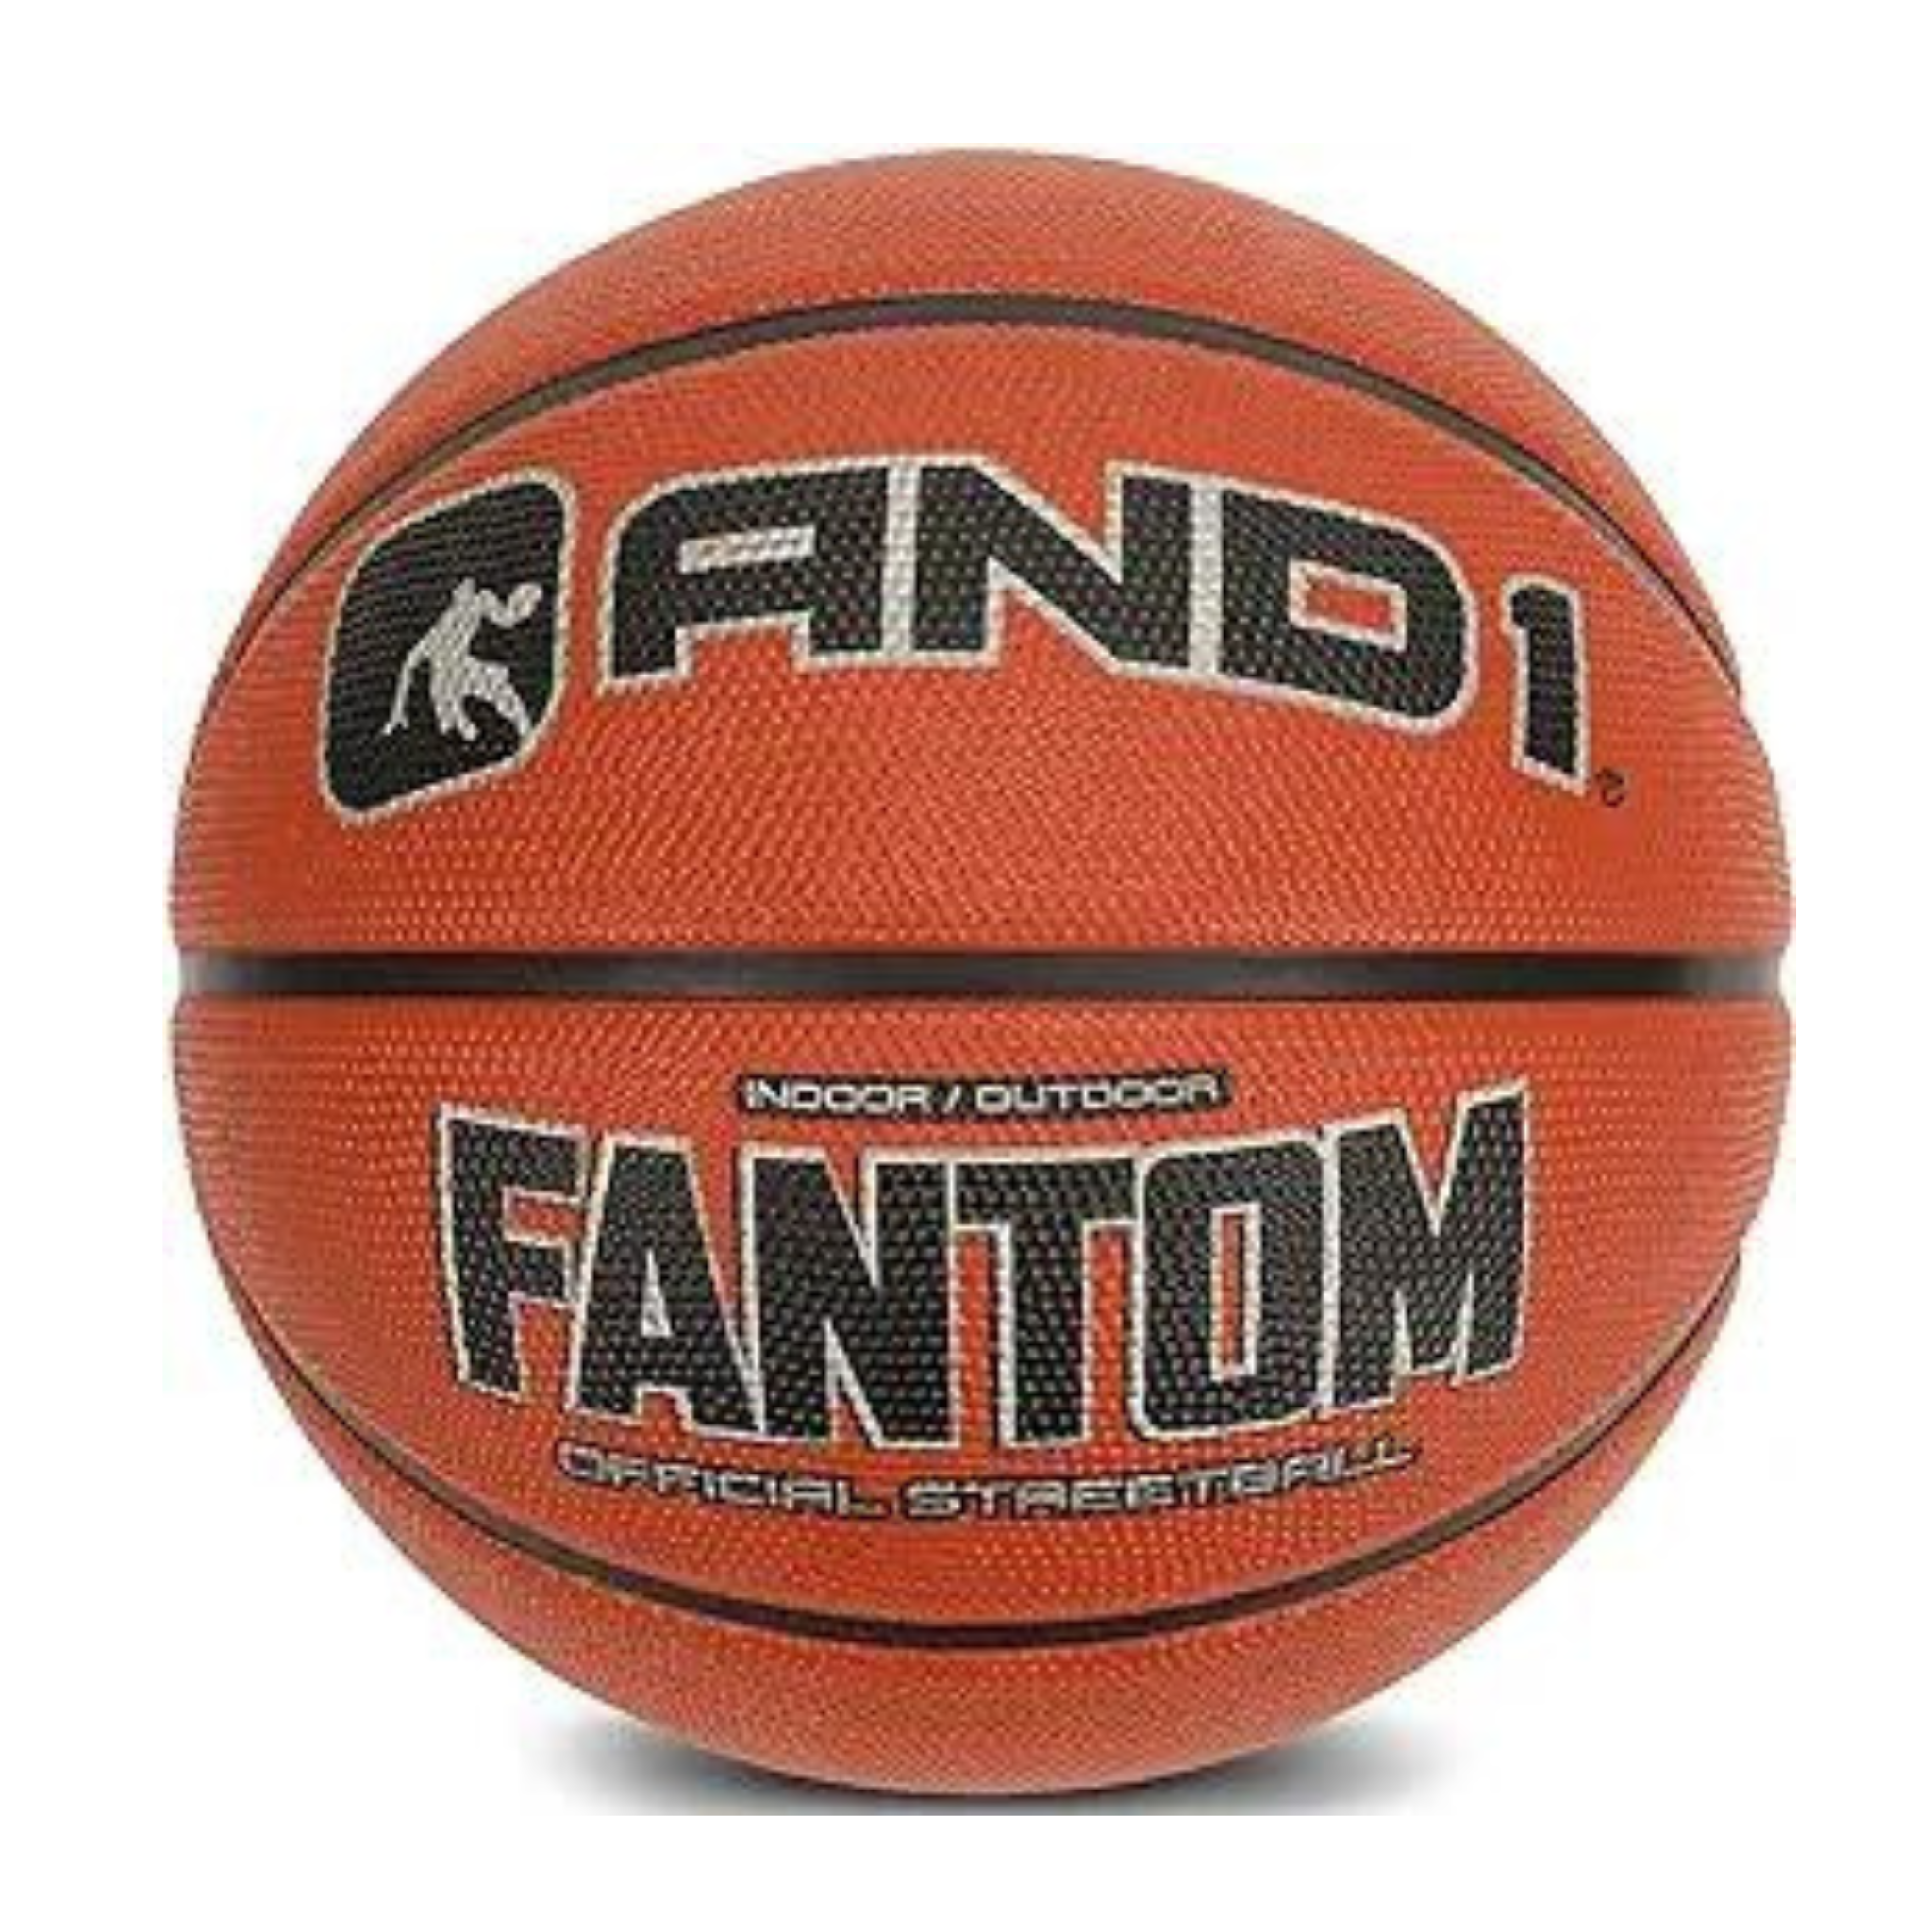 AND1 Fantom Basketball